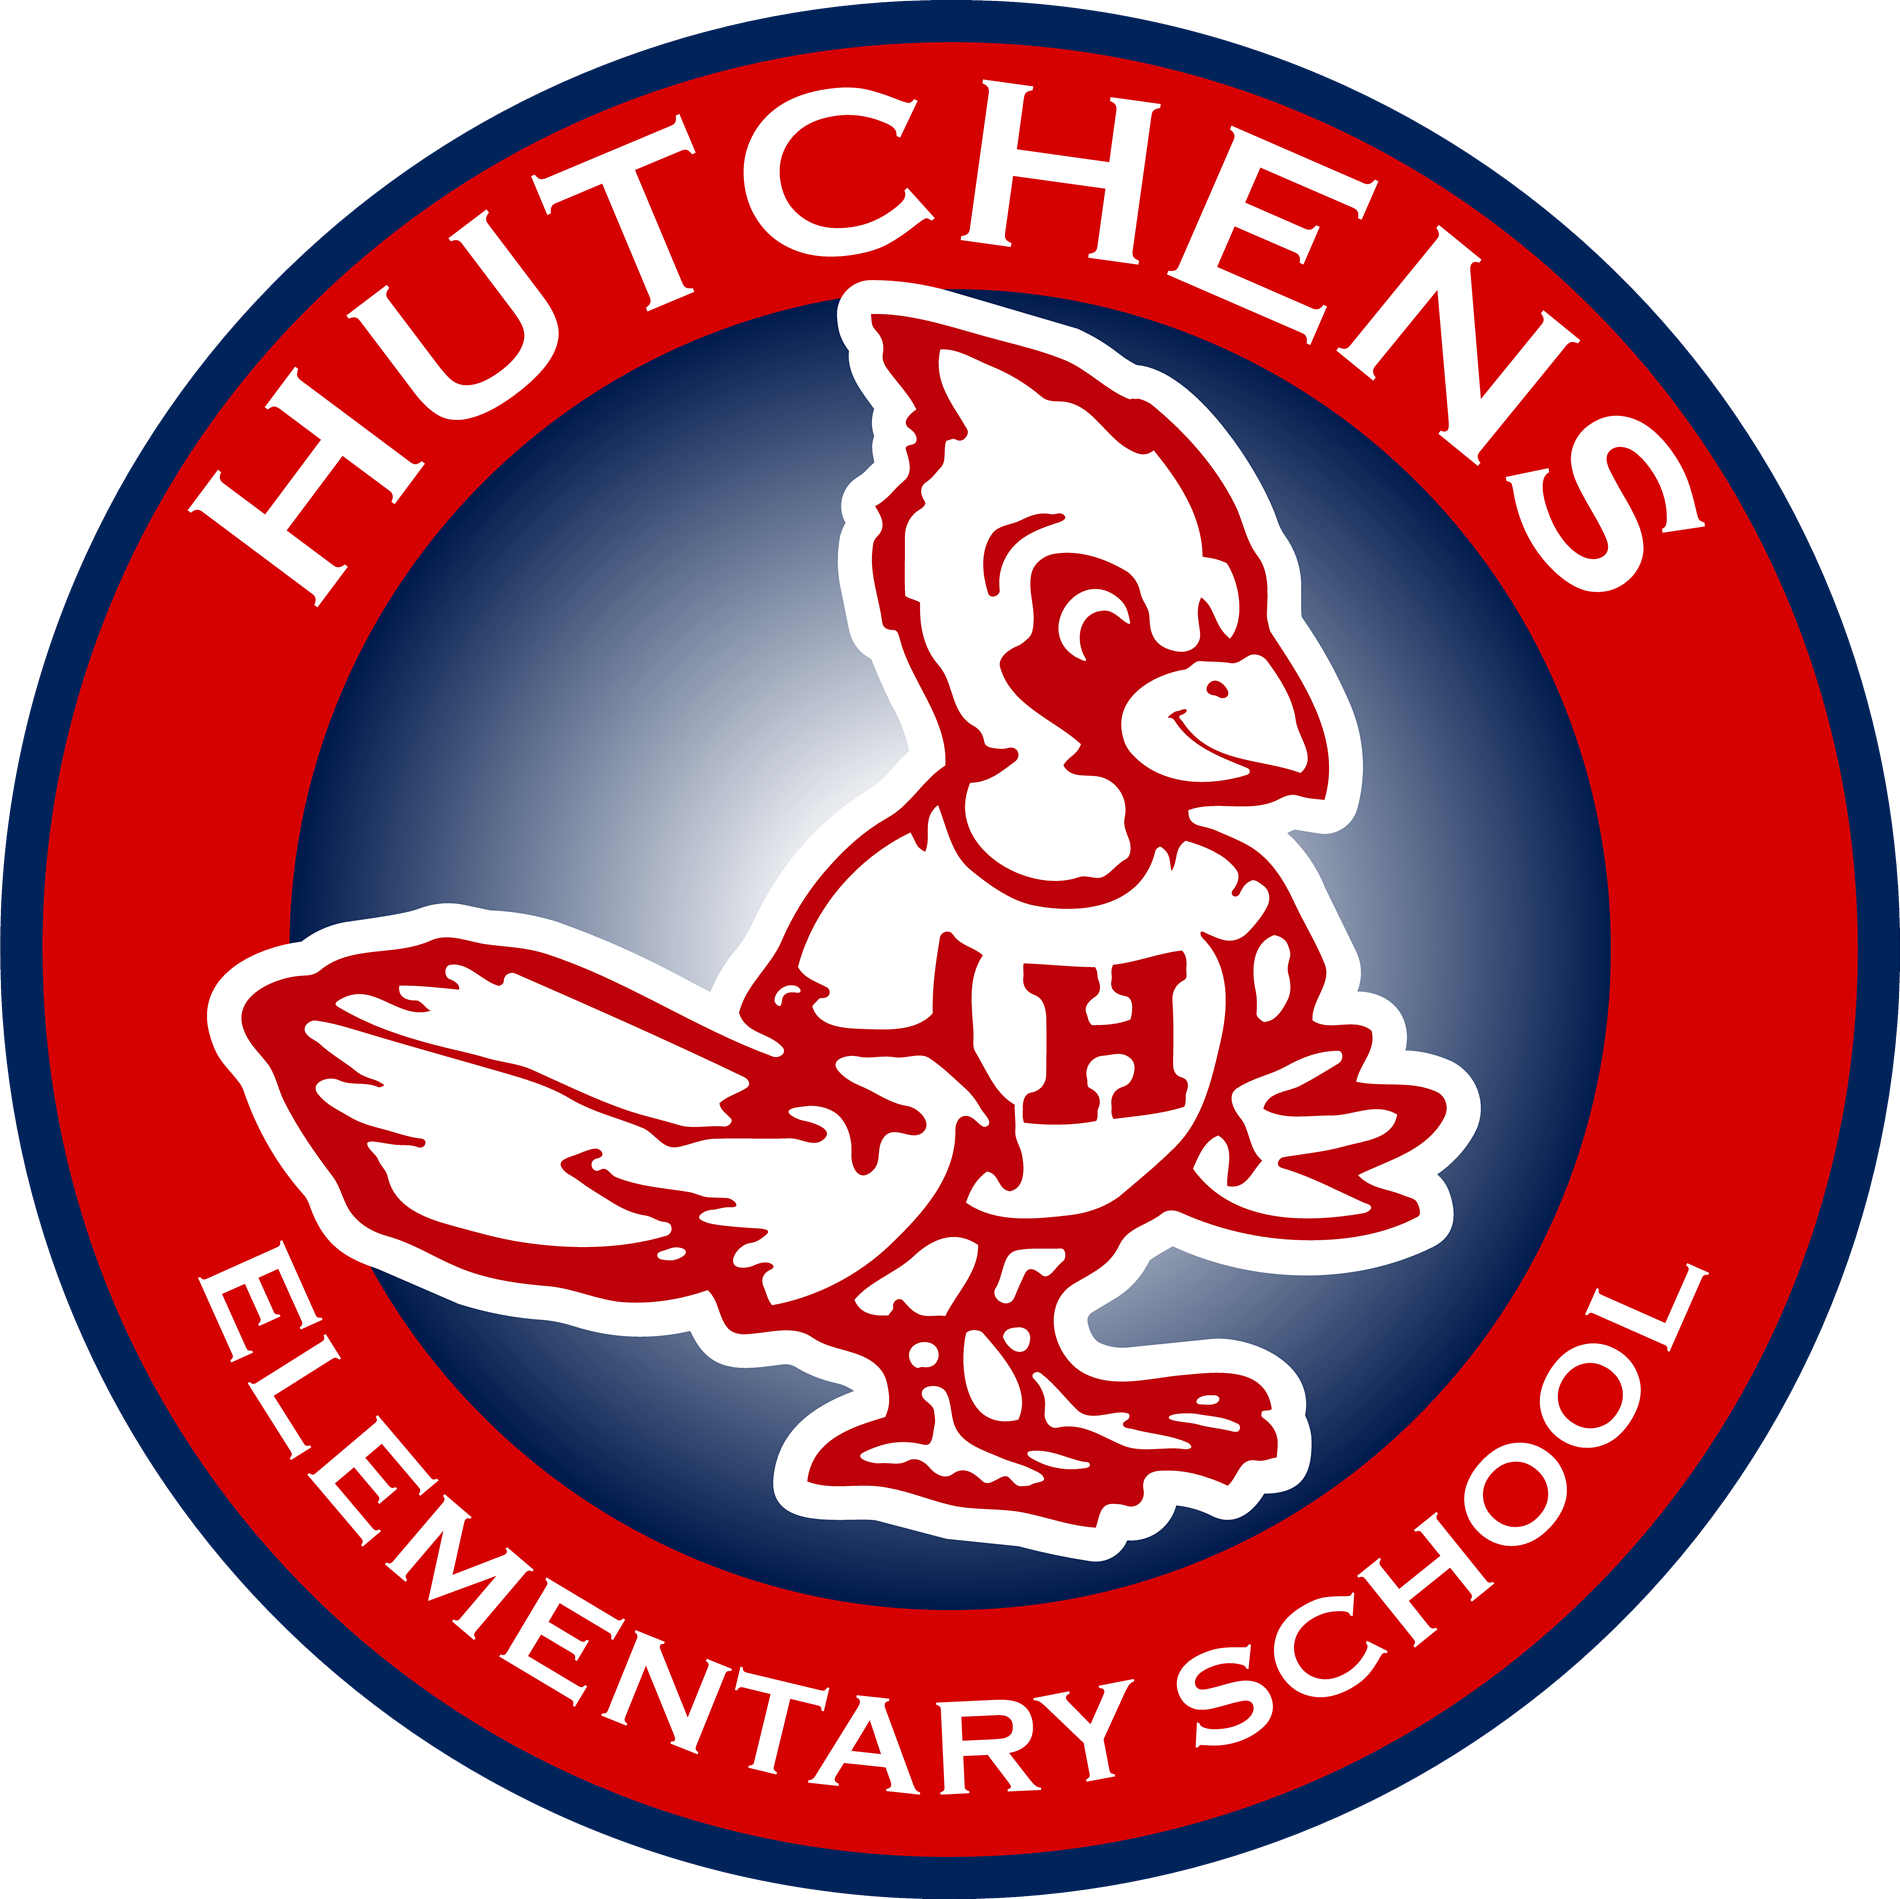 Hutchens